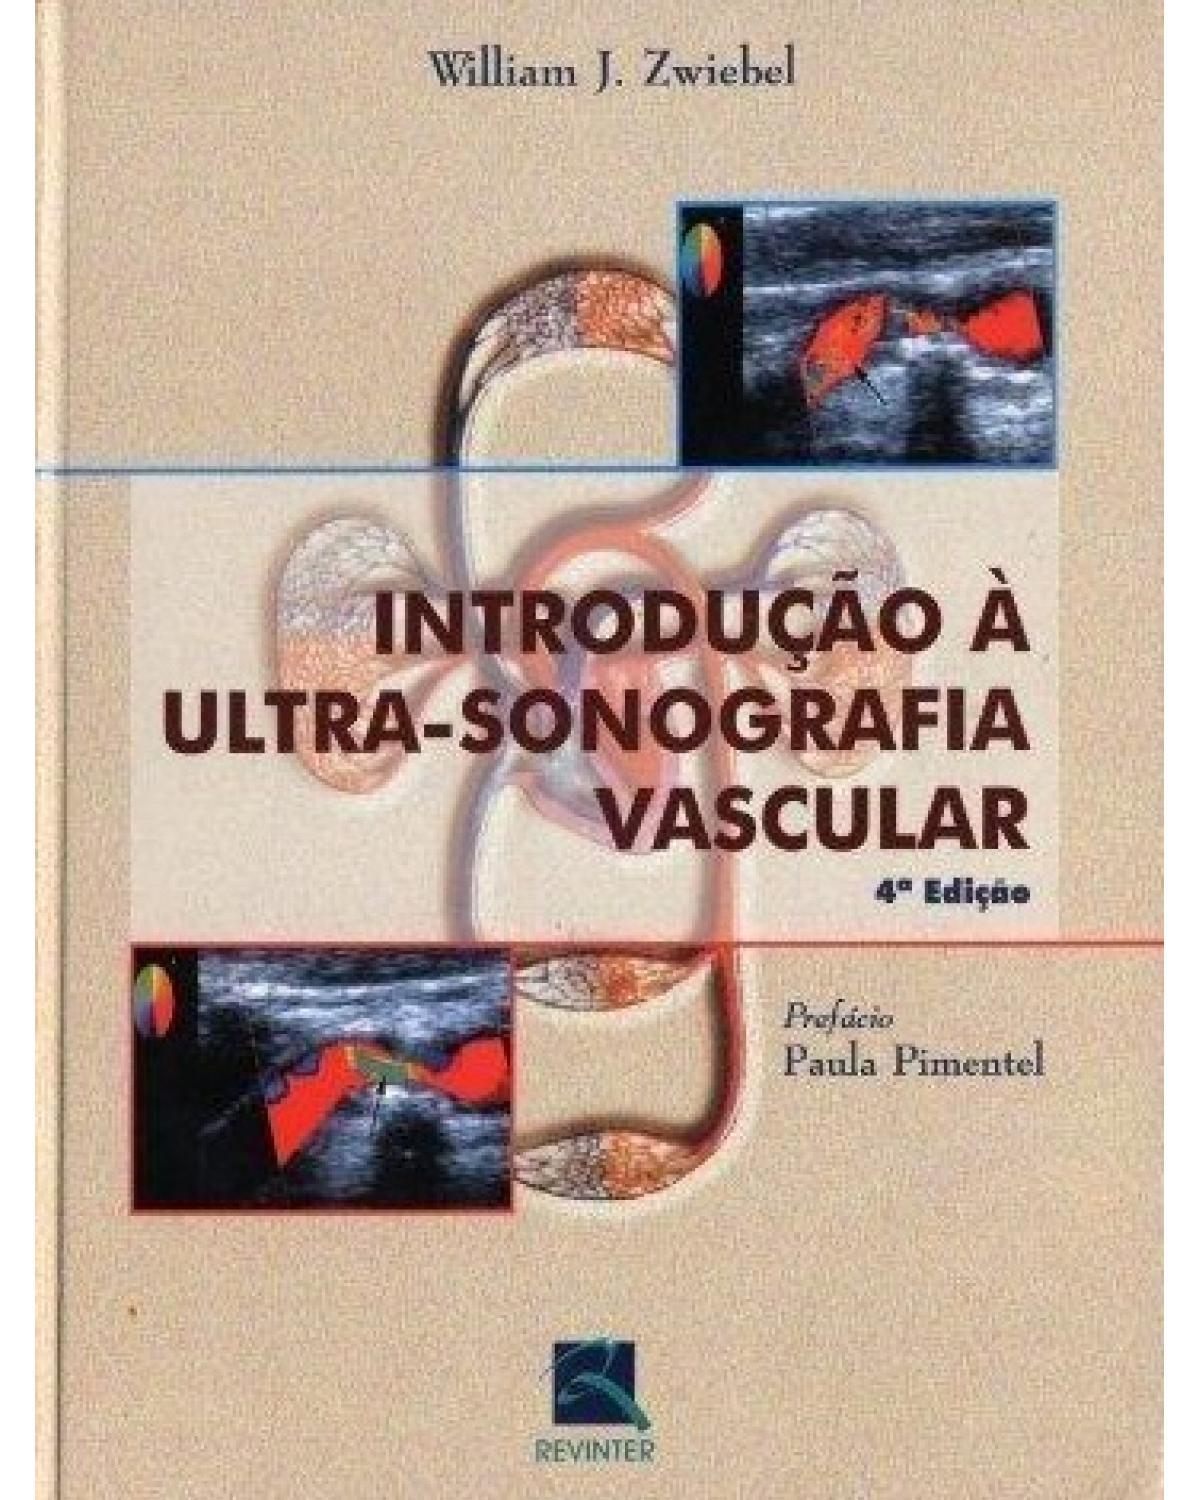 Introdução à ultra-sonografia vascular - 4ª Edição | 2003